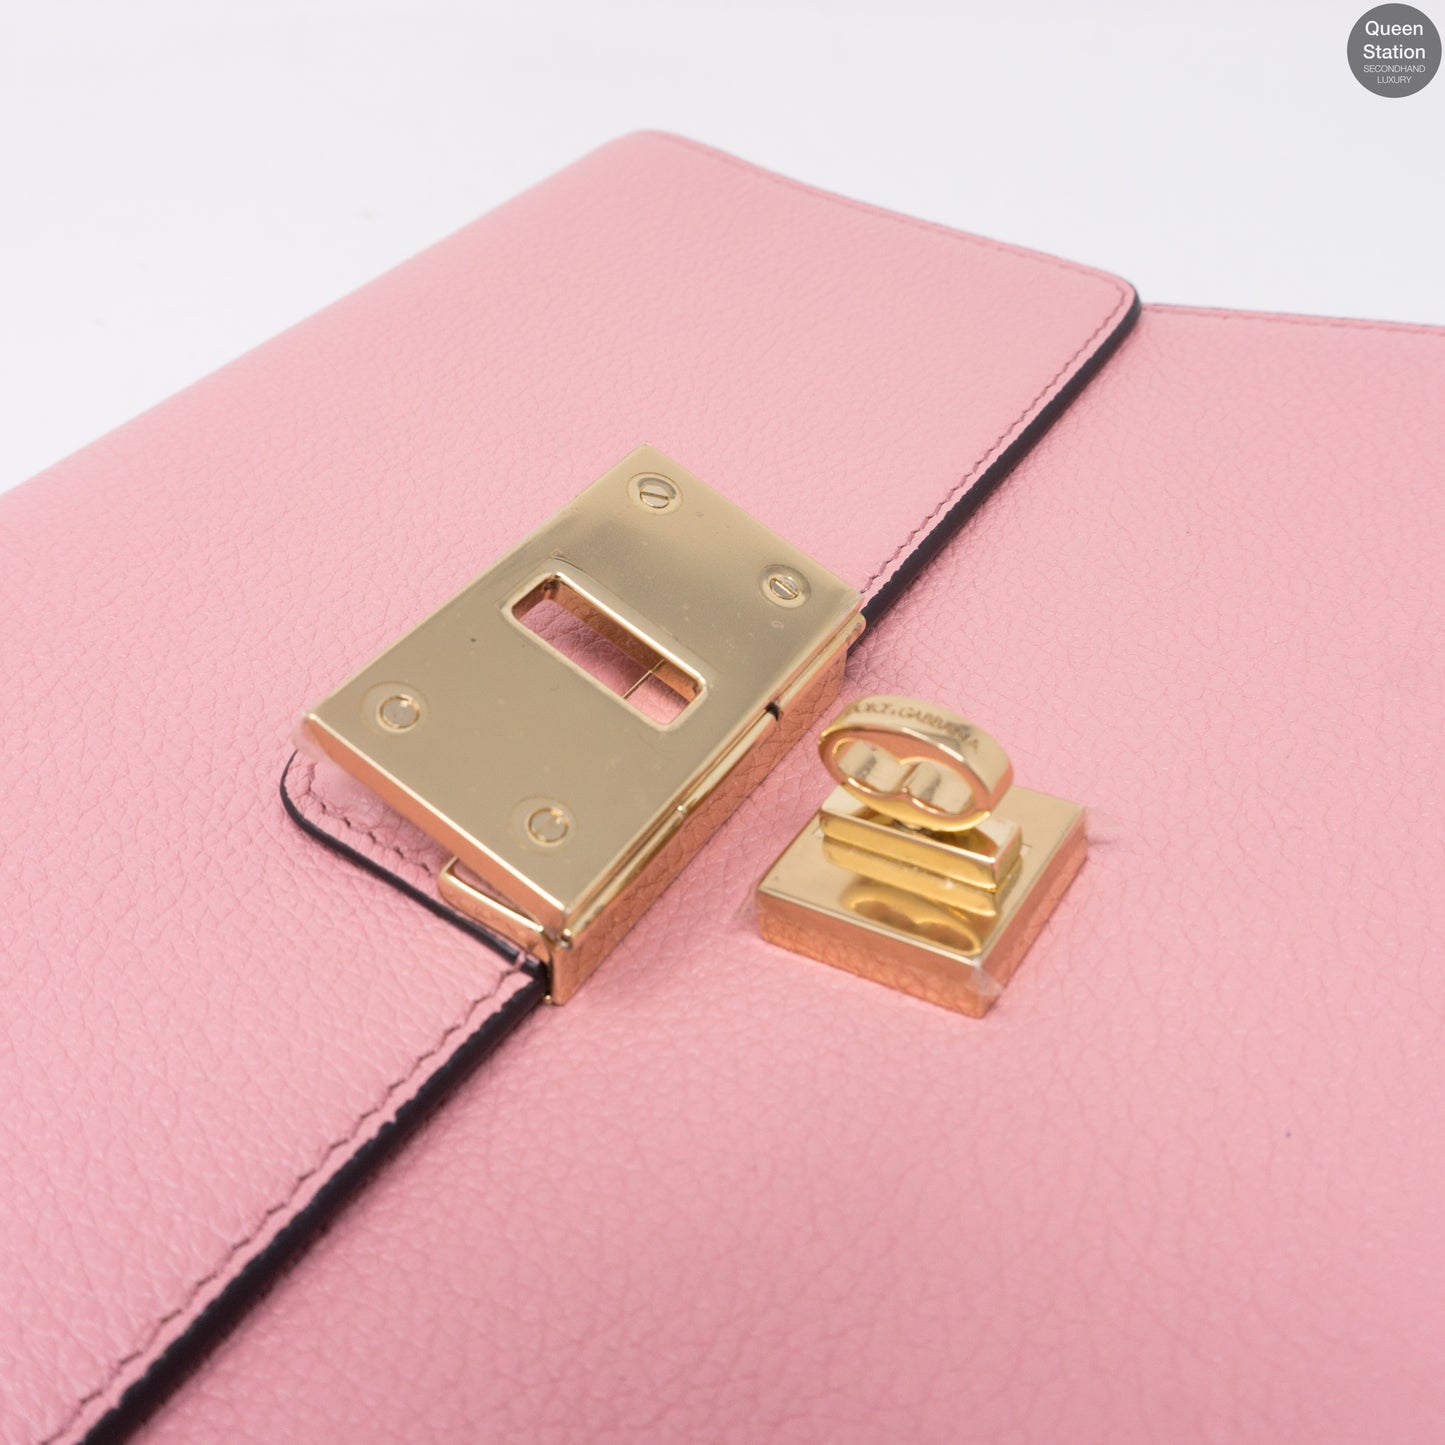 Rosalia Pink Leather Shoulder Bag